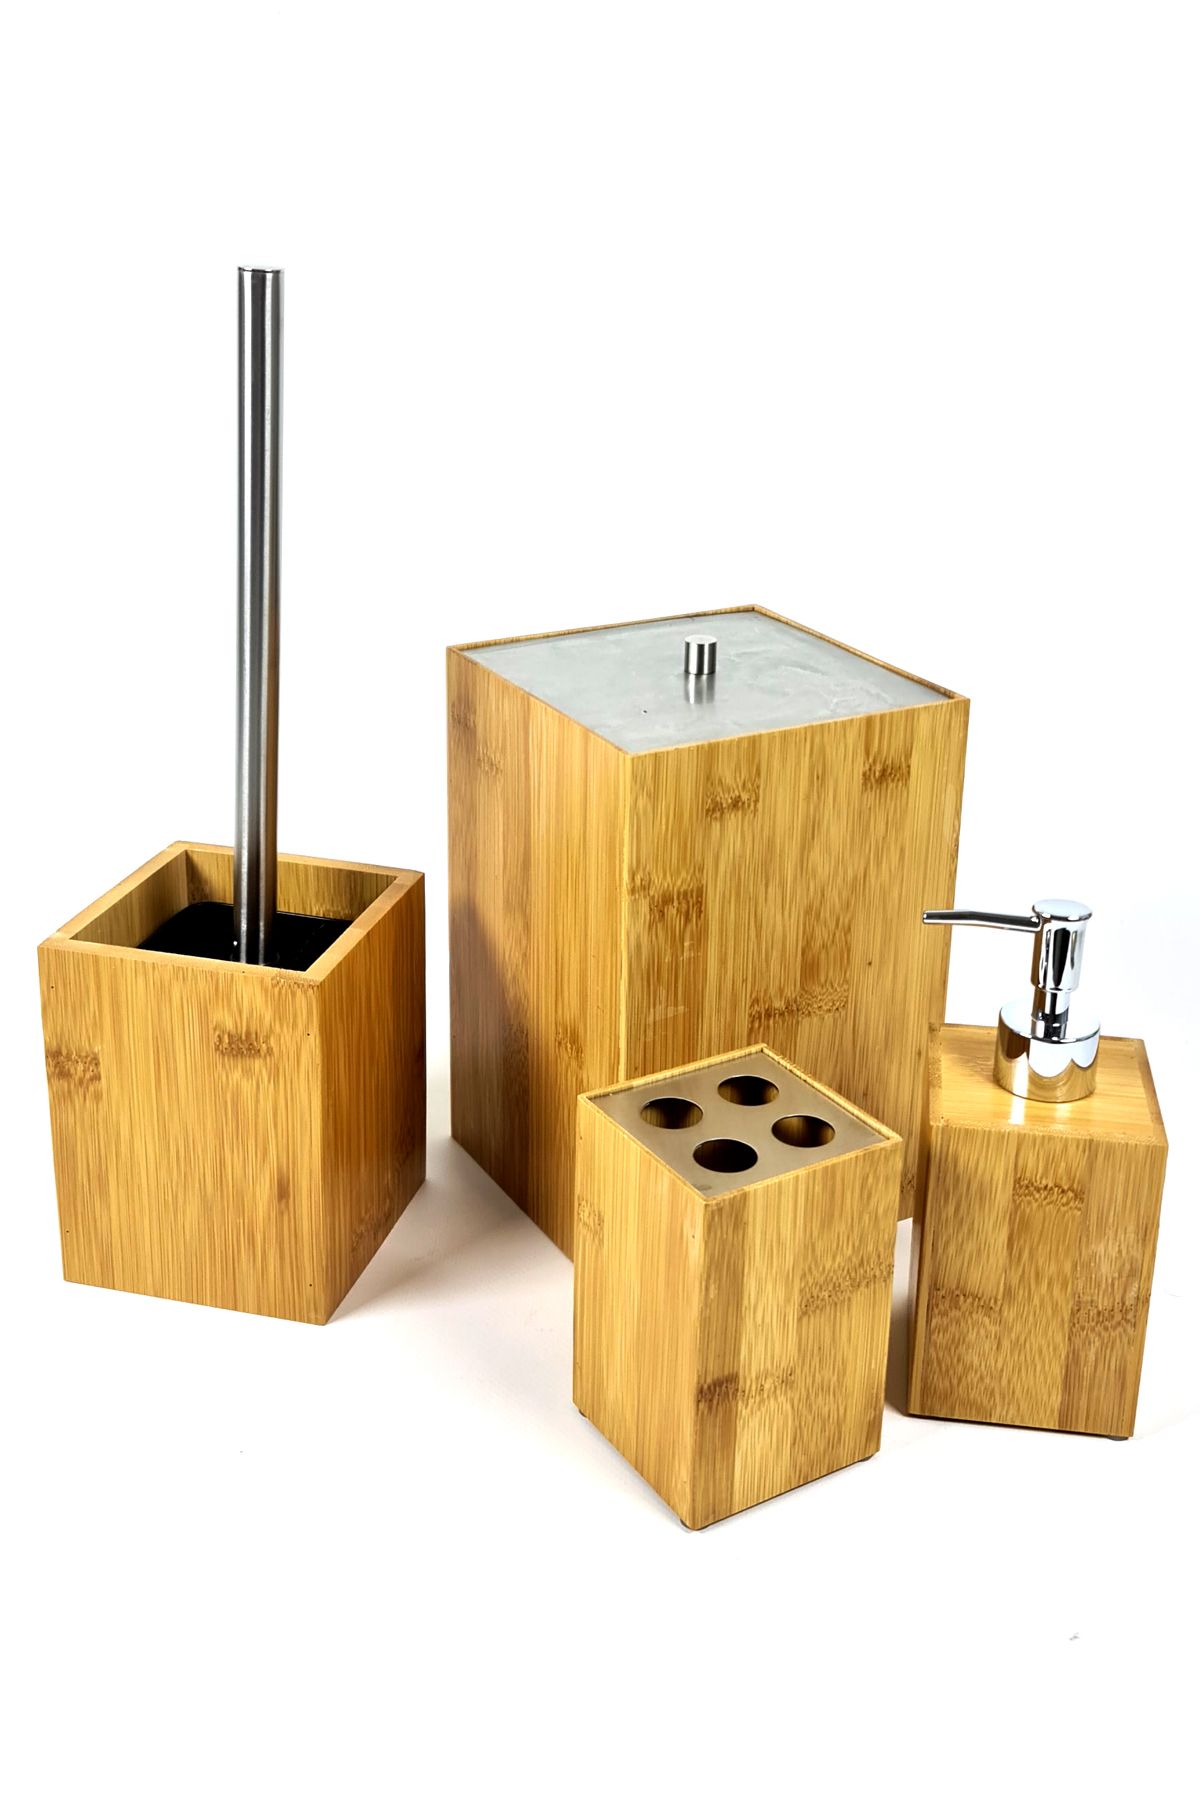 Binbirreyon Doğal Bambu Banyo Aksesuar Seti 4 Parça Çöp Kovası Fırça Diş Fırçalık Sabunluk Set LB141